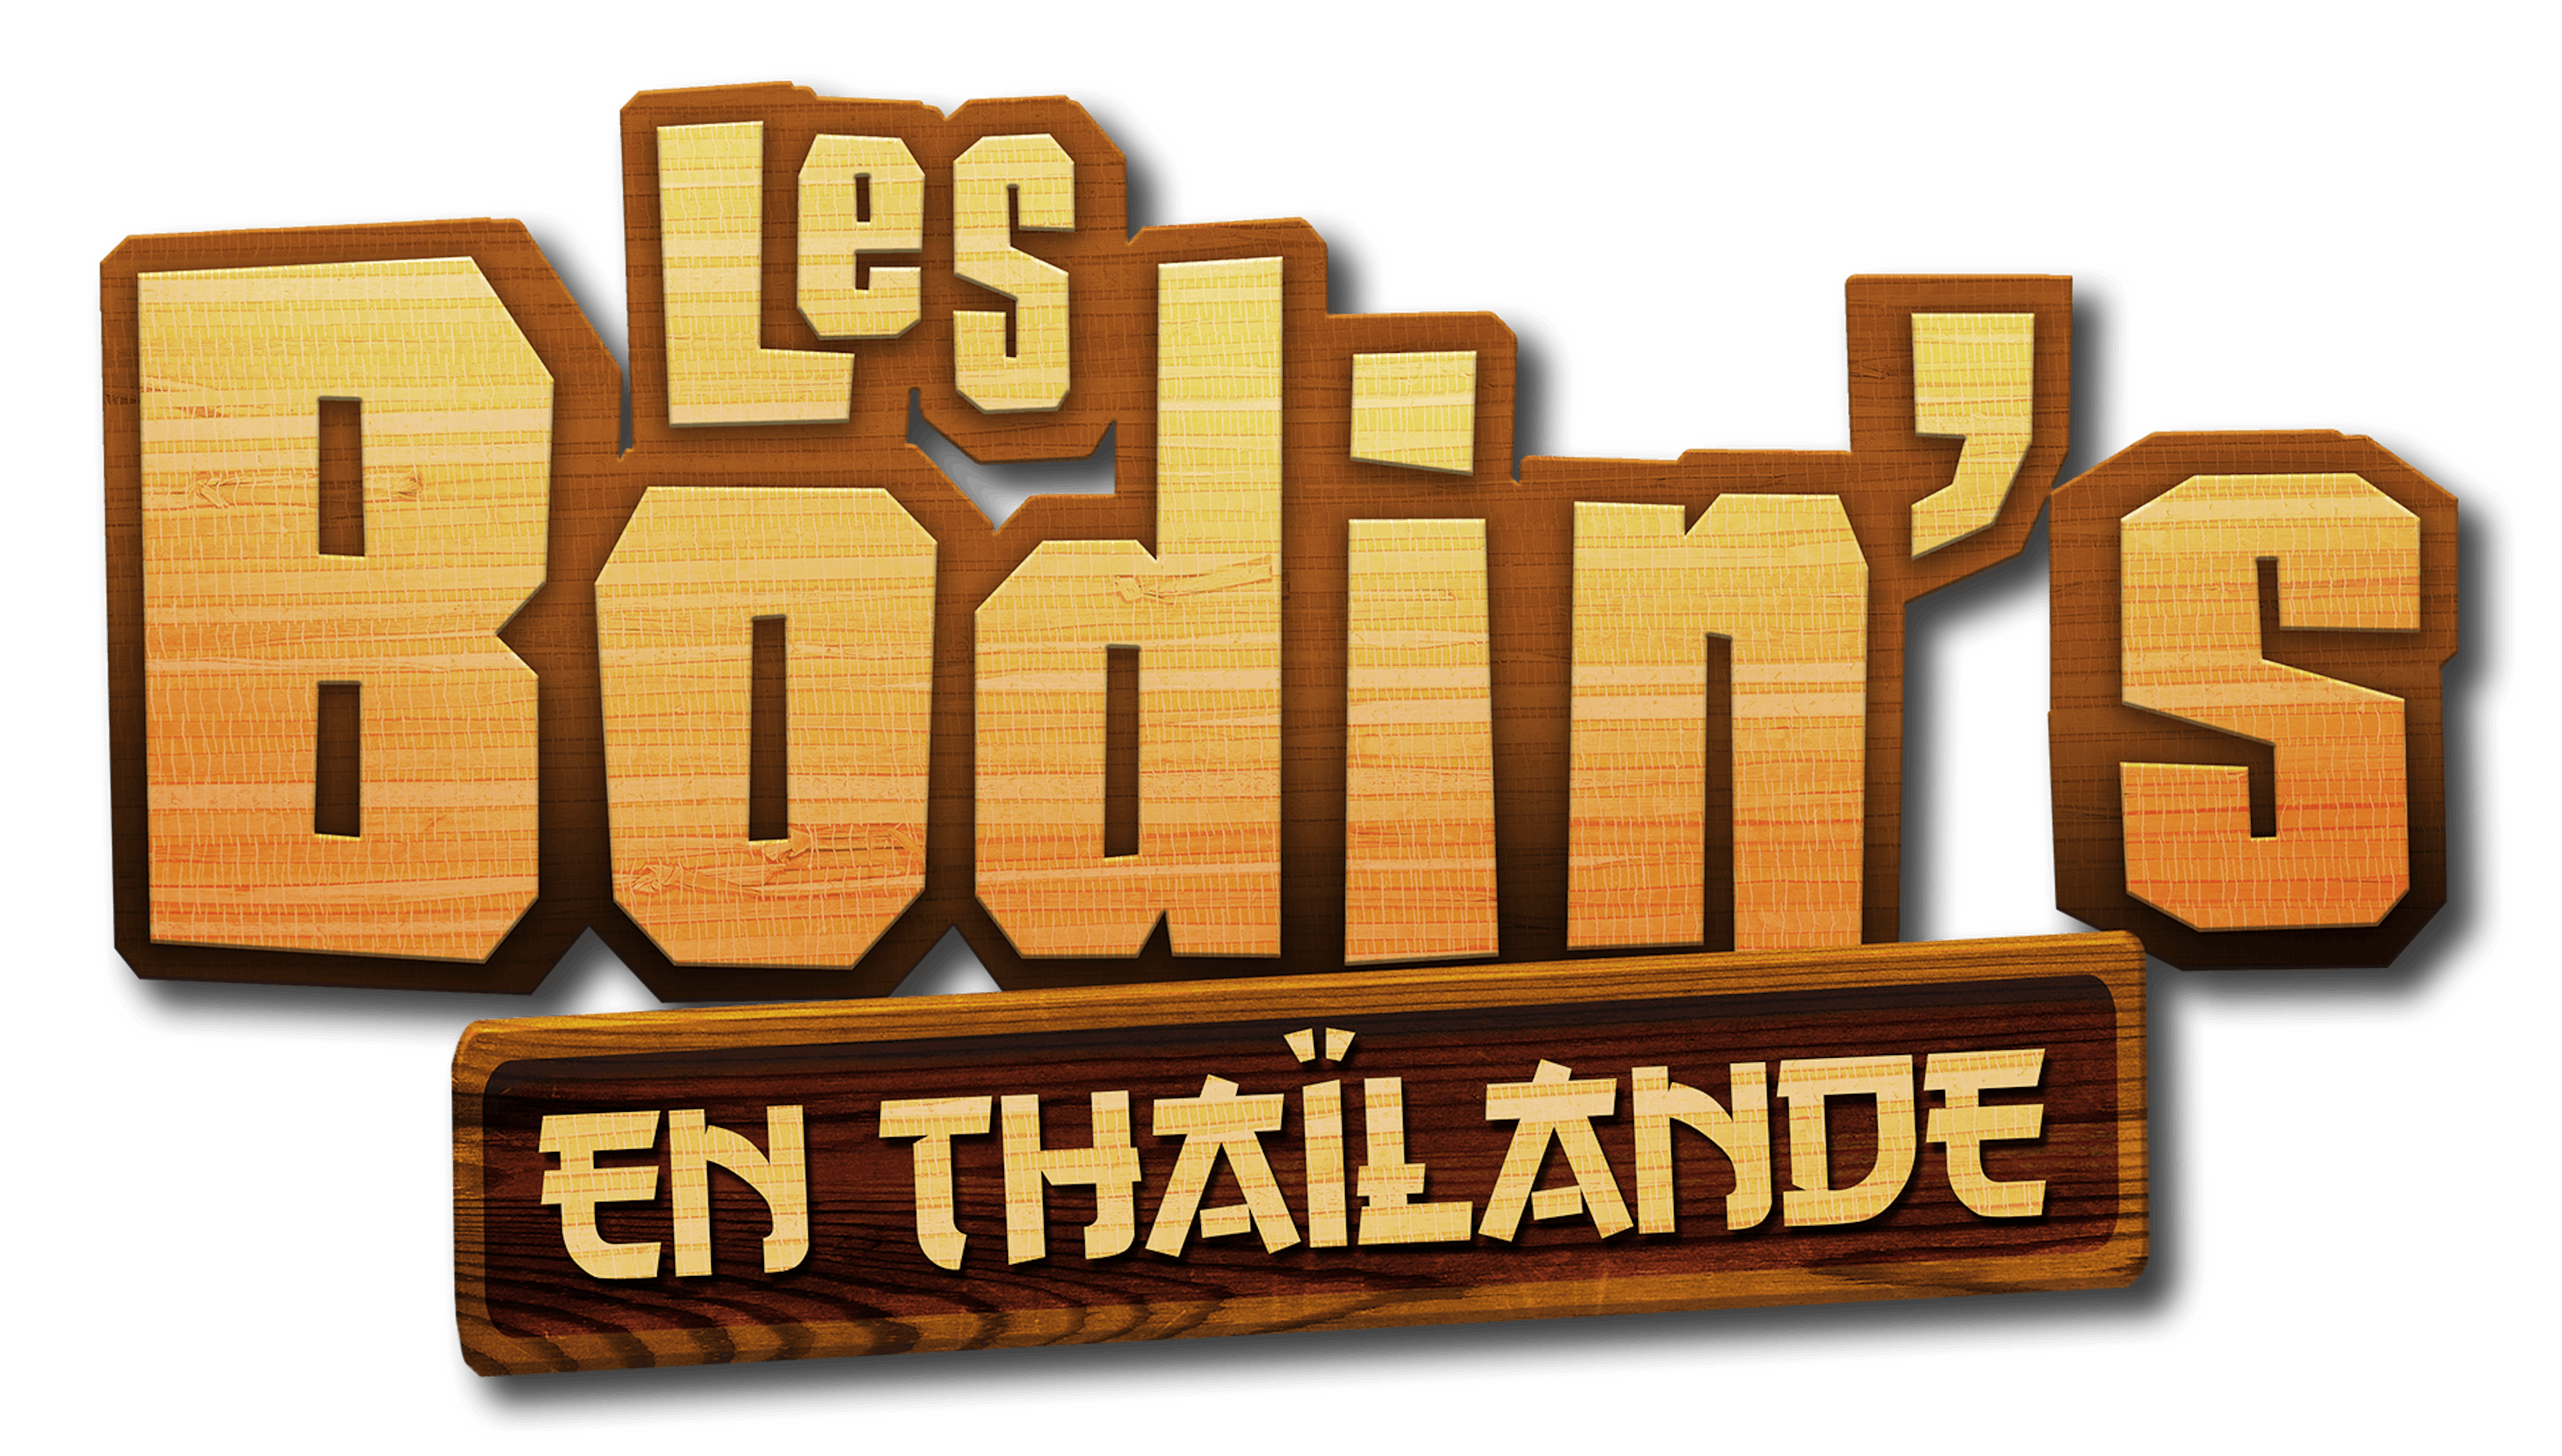 Les Bodin's en Thaïlande